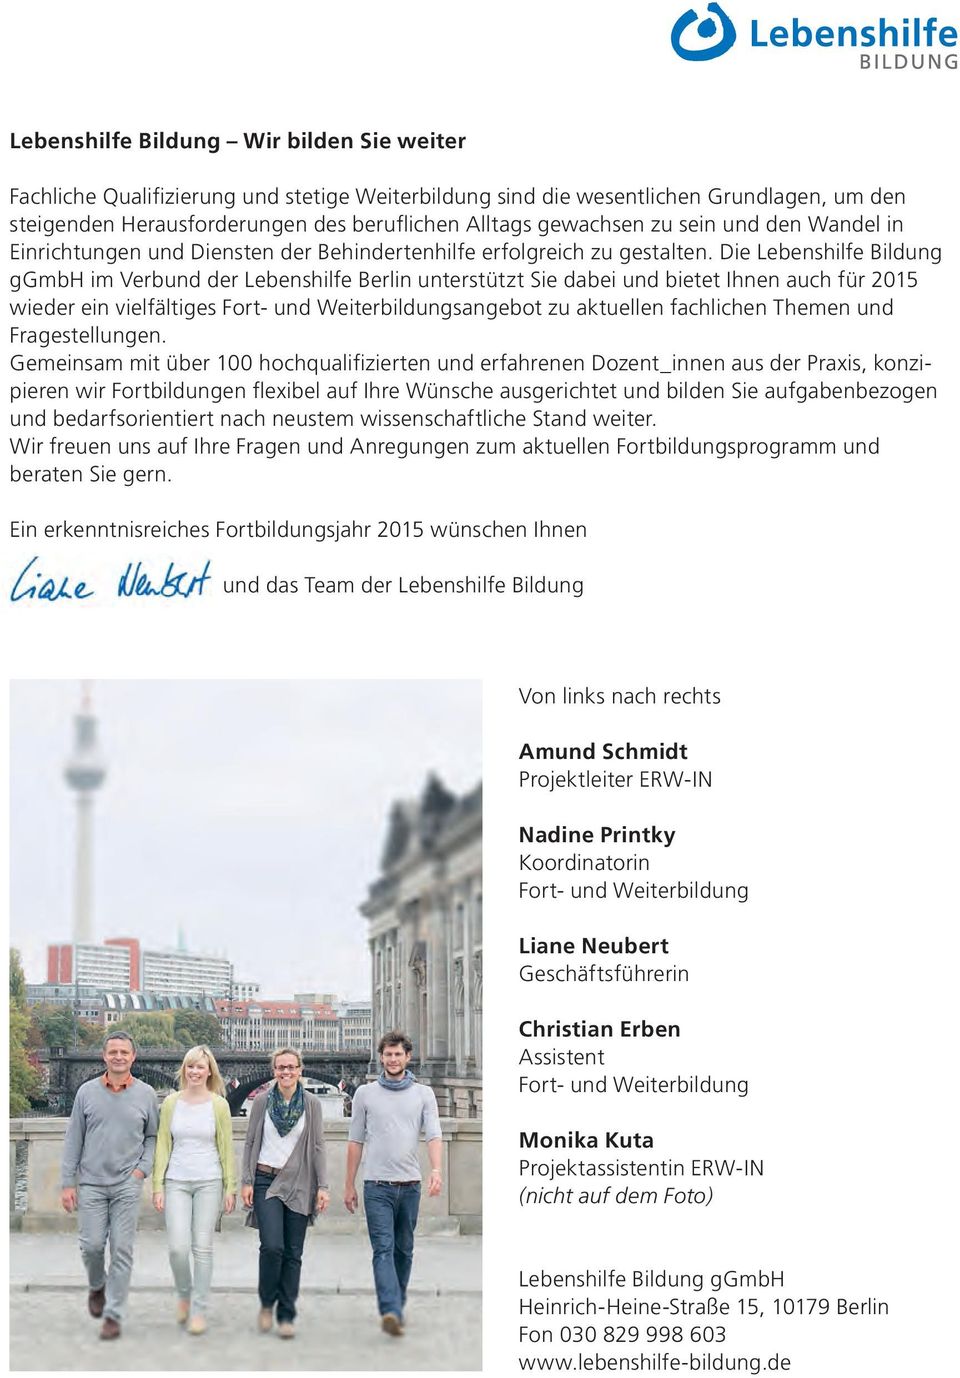 Die Lebenshilfe Bildung ggmbh im Verbund der Lebenshilfe Berlin unterstützt Sie dabei und bietet Ihnen auch für 2015 wieder ein vielfältiges Fort- und Weiterbildungsangebot zu aktuellen fachlichen